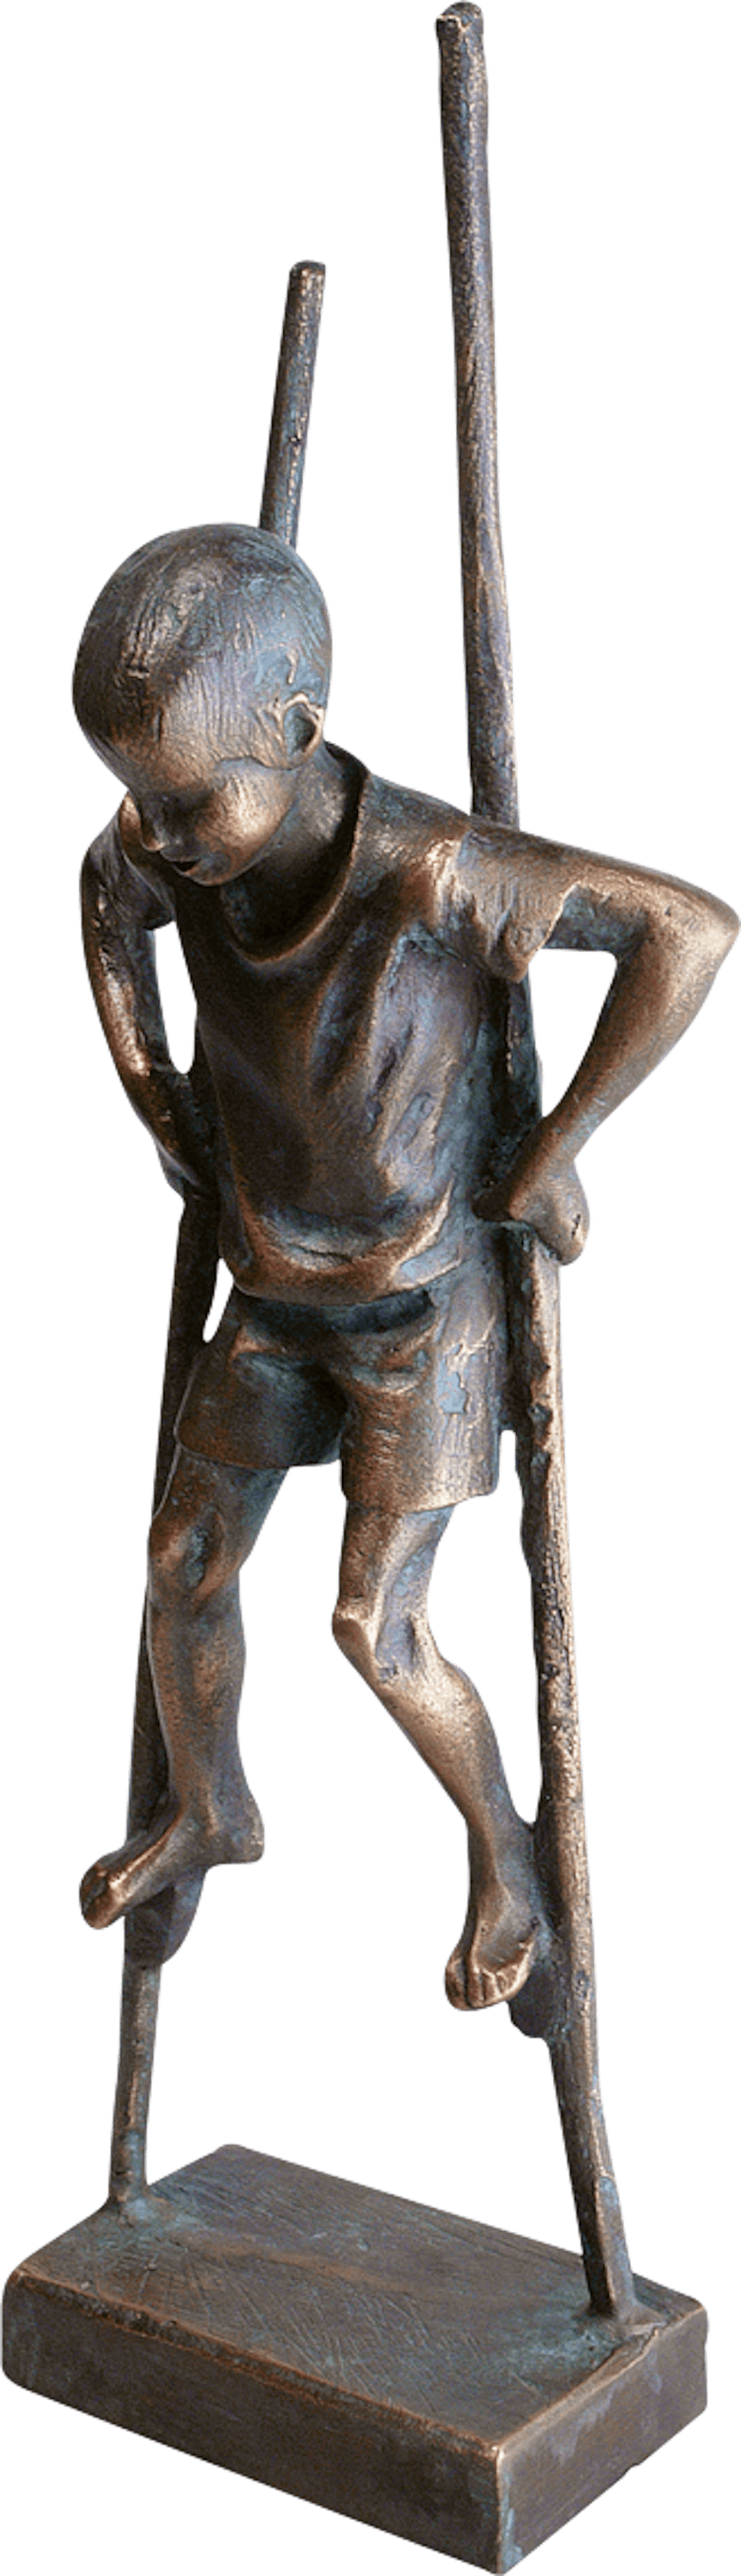 Bronzefigur Stelzenläufer von Willi Tannheimer